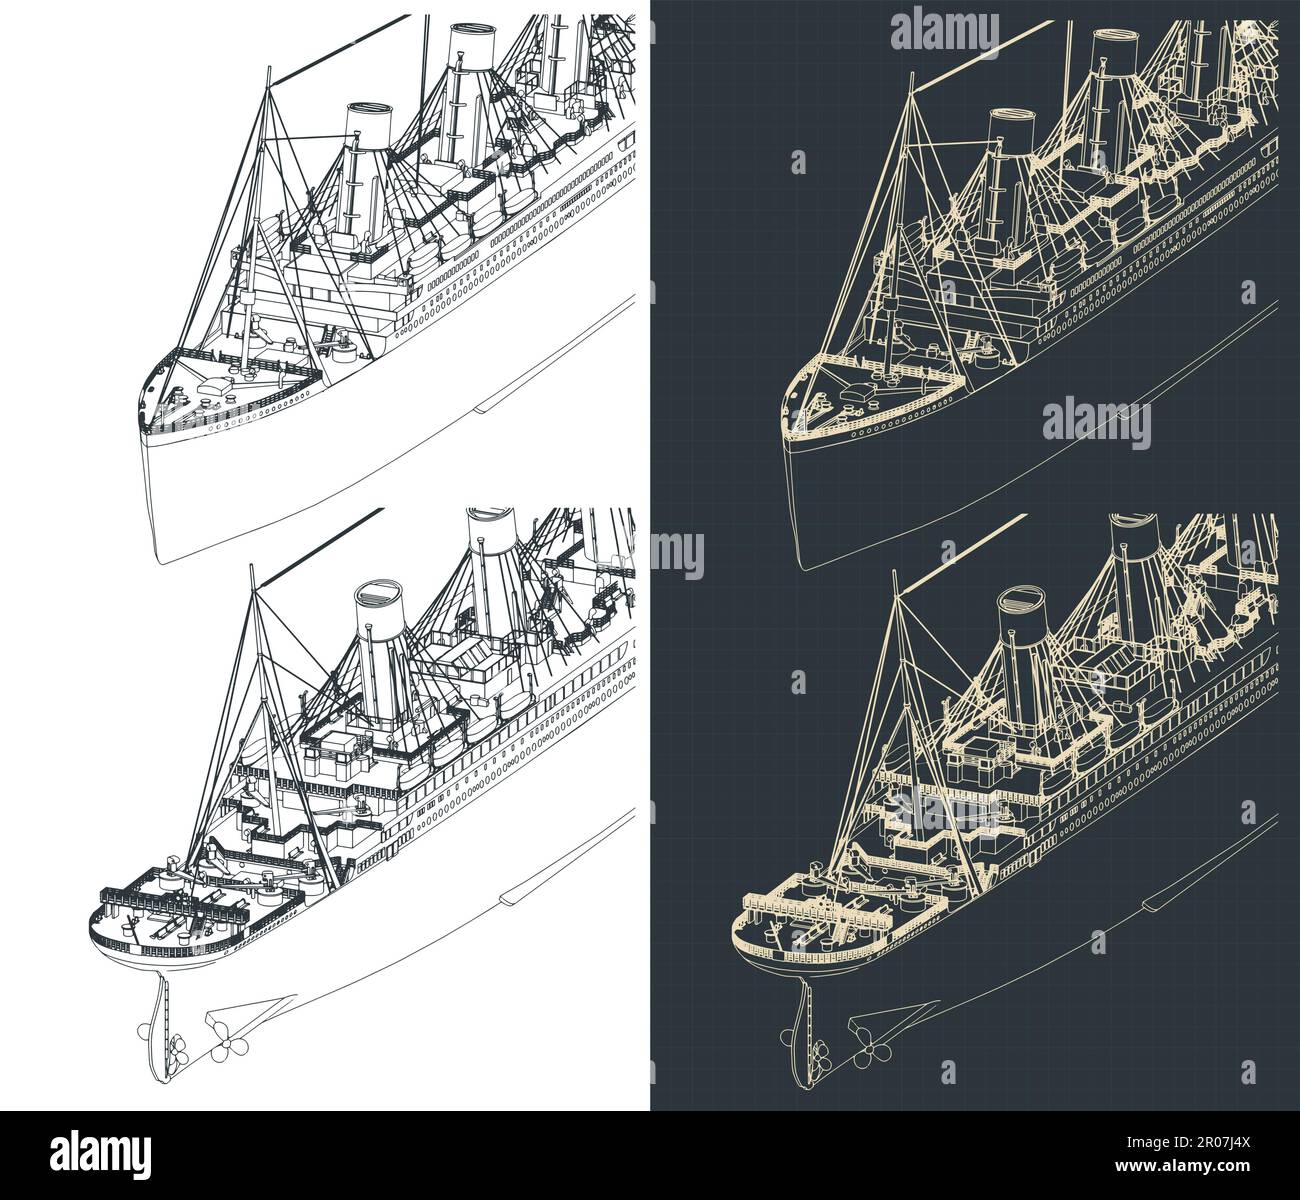 Illustrations vectorielles stylisées de plans isométriques du Titanic Illustration de Vecteur